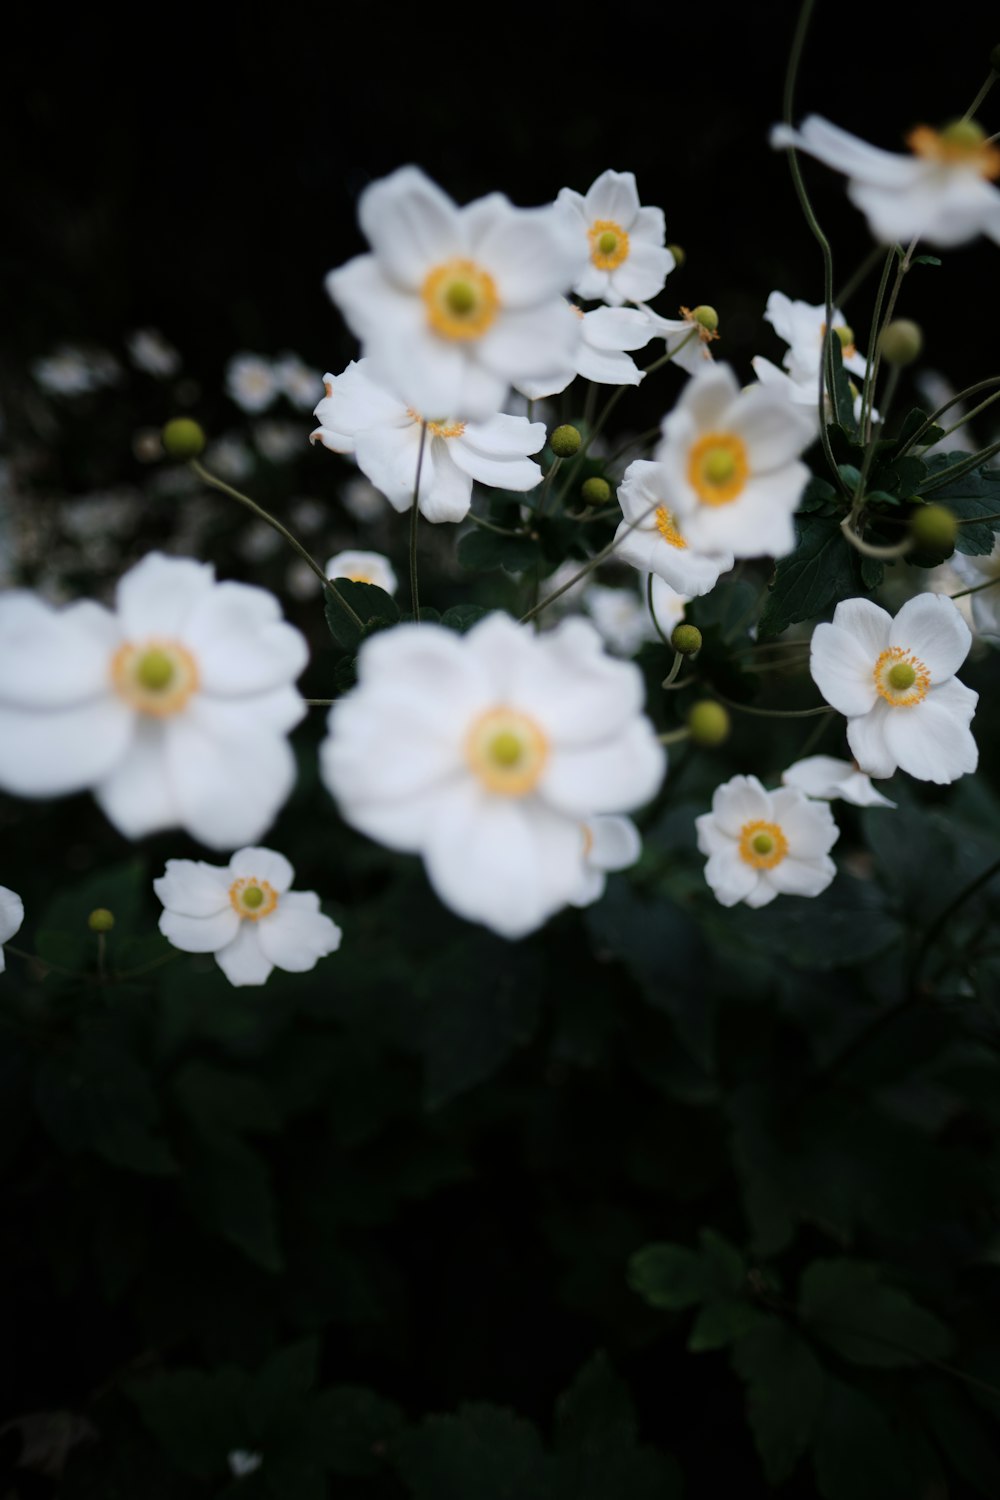 ein Strauß weißer Blüten mit gelben Zentren